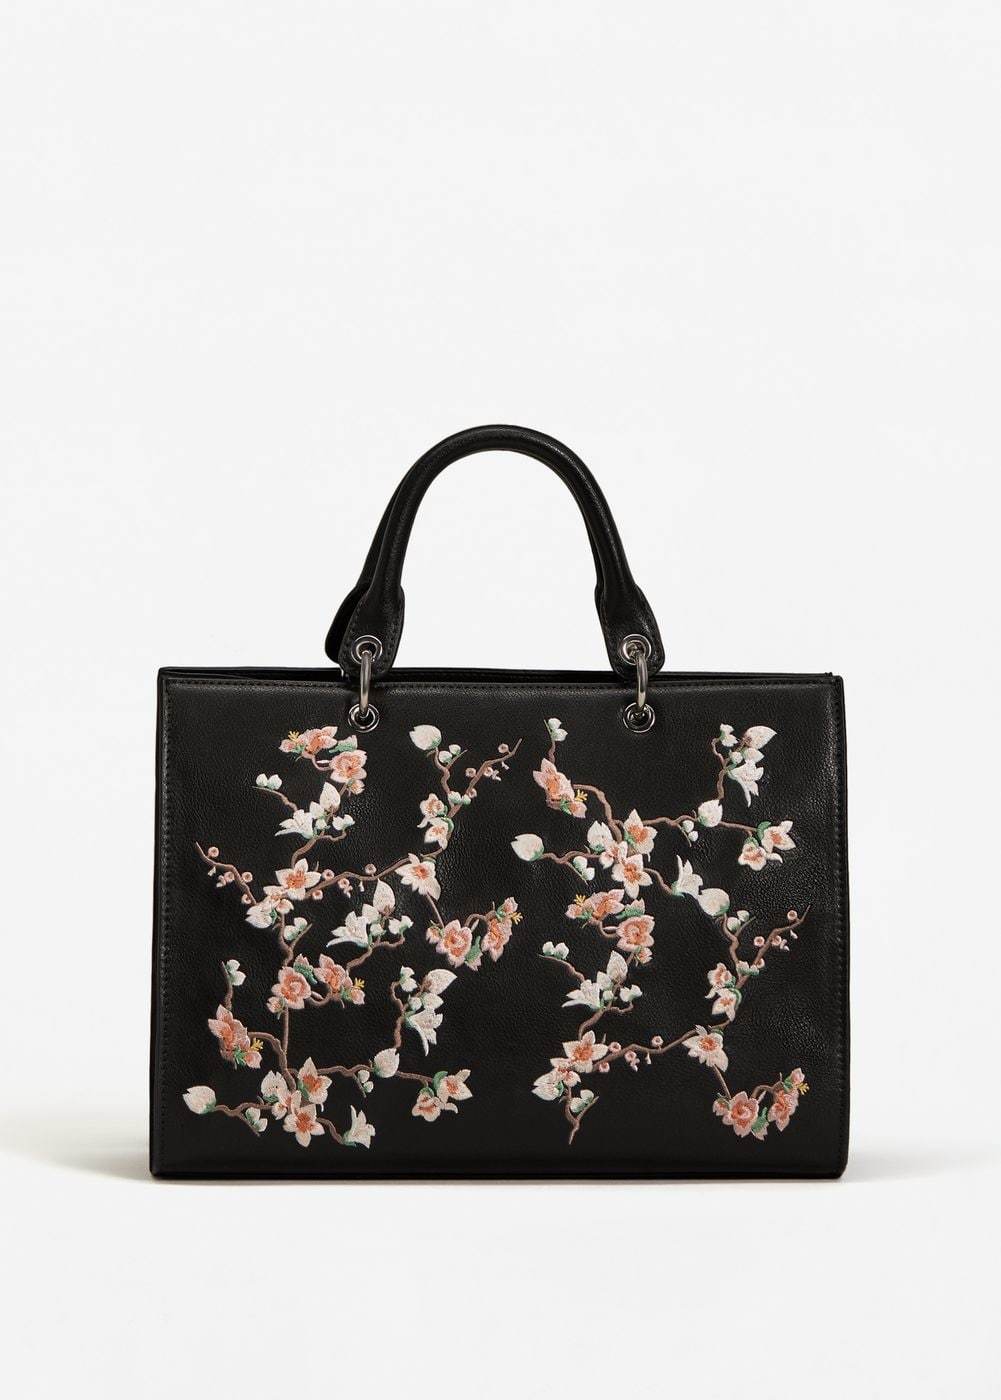 Bolso de mano con flores de almendro bordadas, de Mango (de 39,99 a...